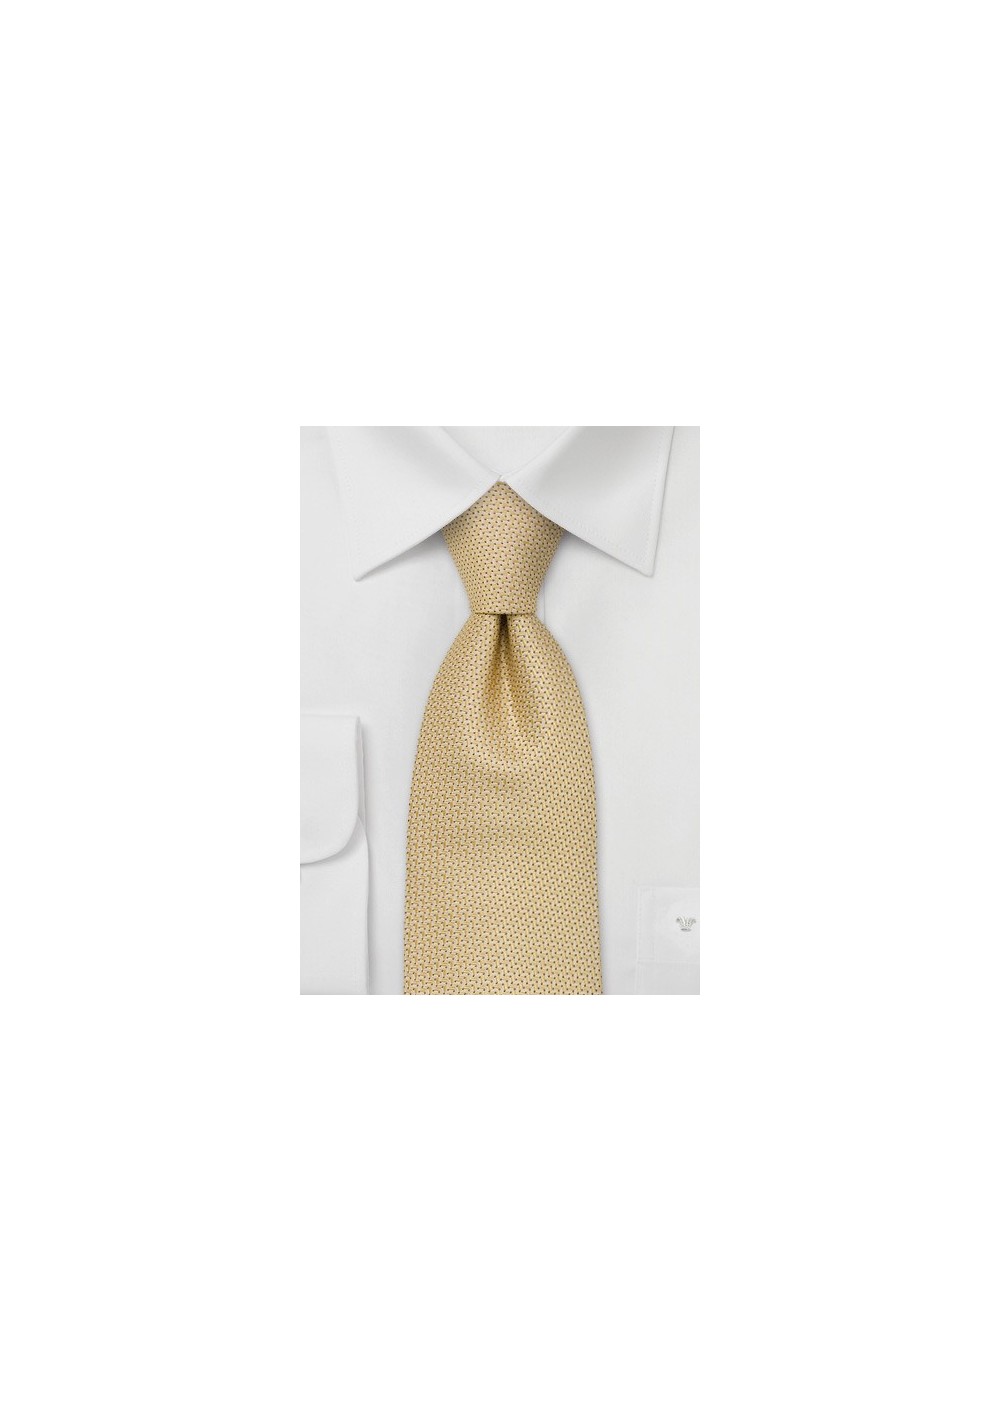 Designer neckties, warm yellow - Handmade silk tie by Chevalier